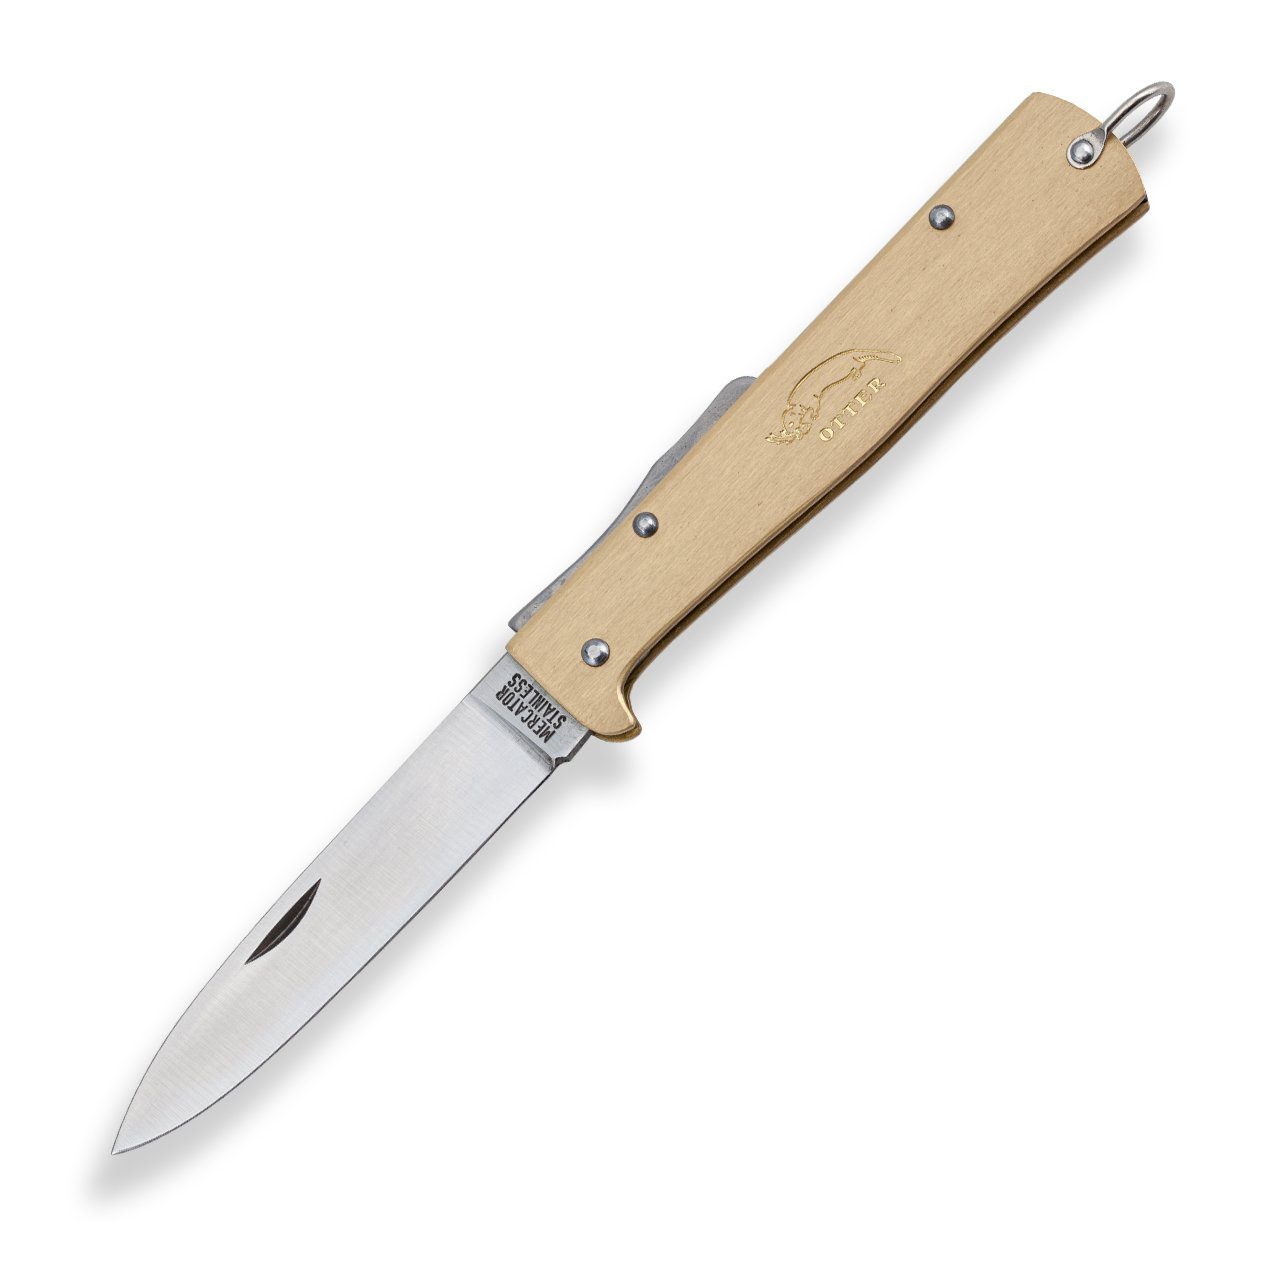 Otter Messer Taschenmesser Mercator-Messer groß Messing, Klinge rostfrei, Backlock